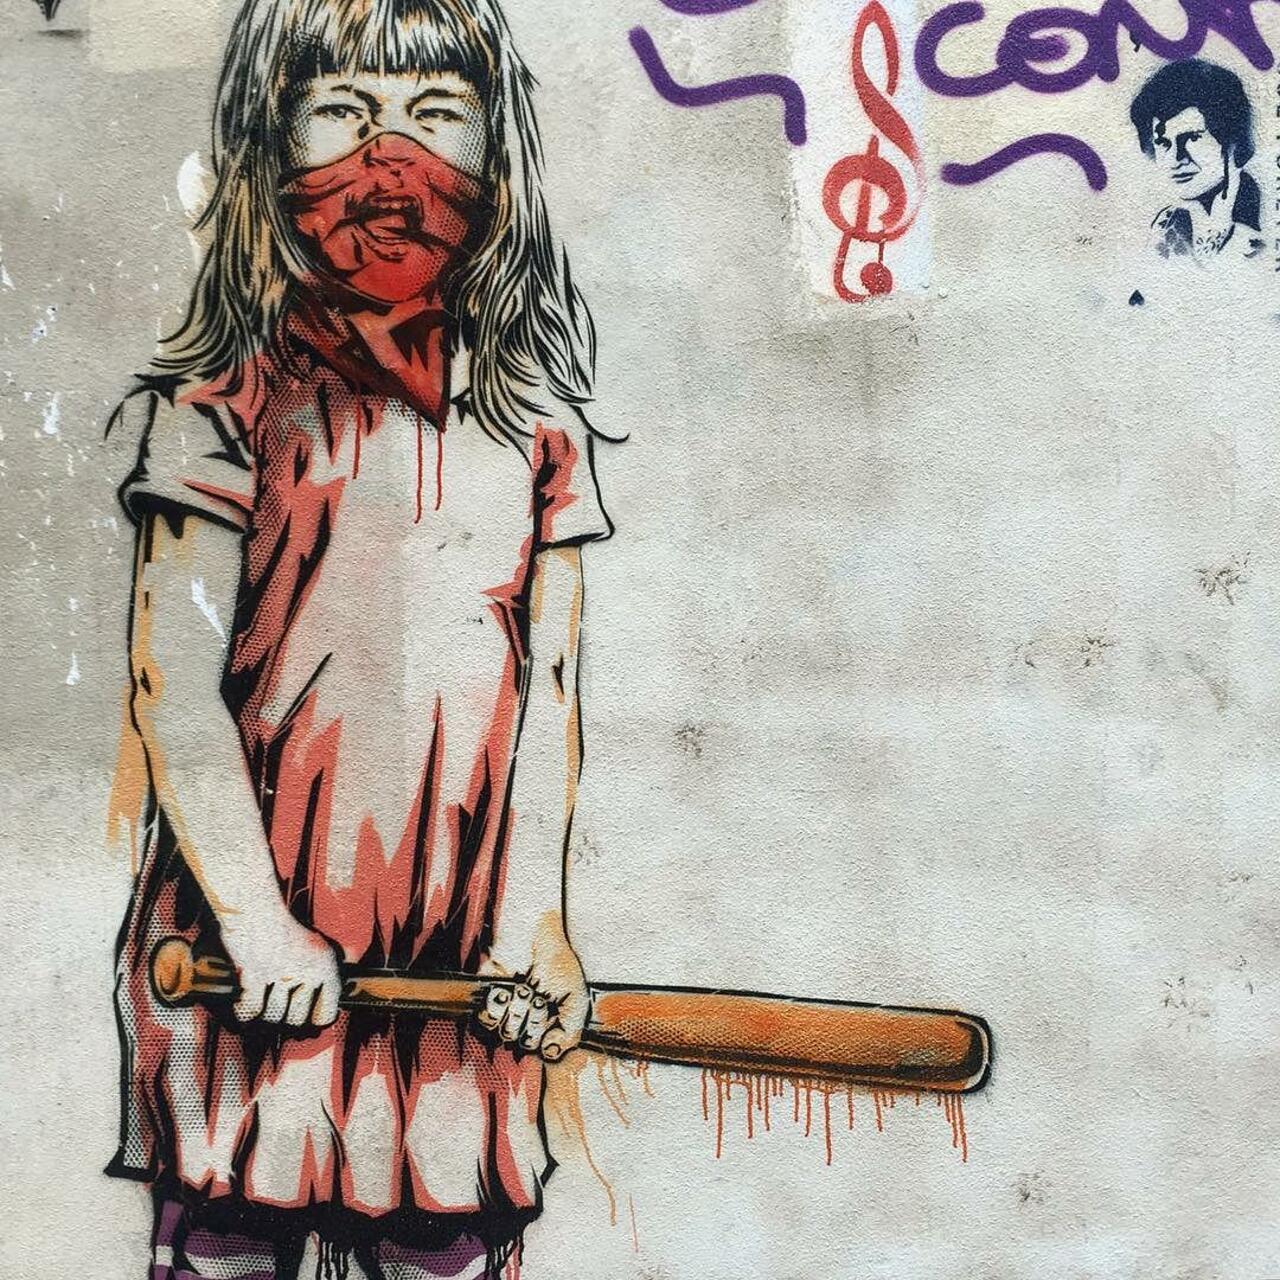 #Paris #graffiti photo by catscoffeecreativity http://ift.tt/1jJB7Xj #StreetArt http://t.co/BmoeBQ6pr5 https://goo.gl/t4fpx2